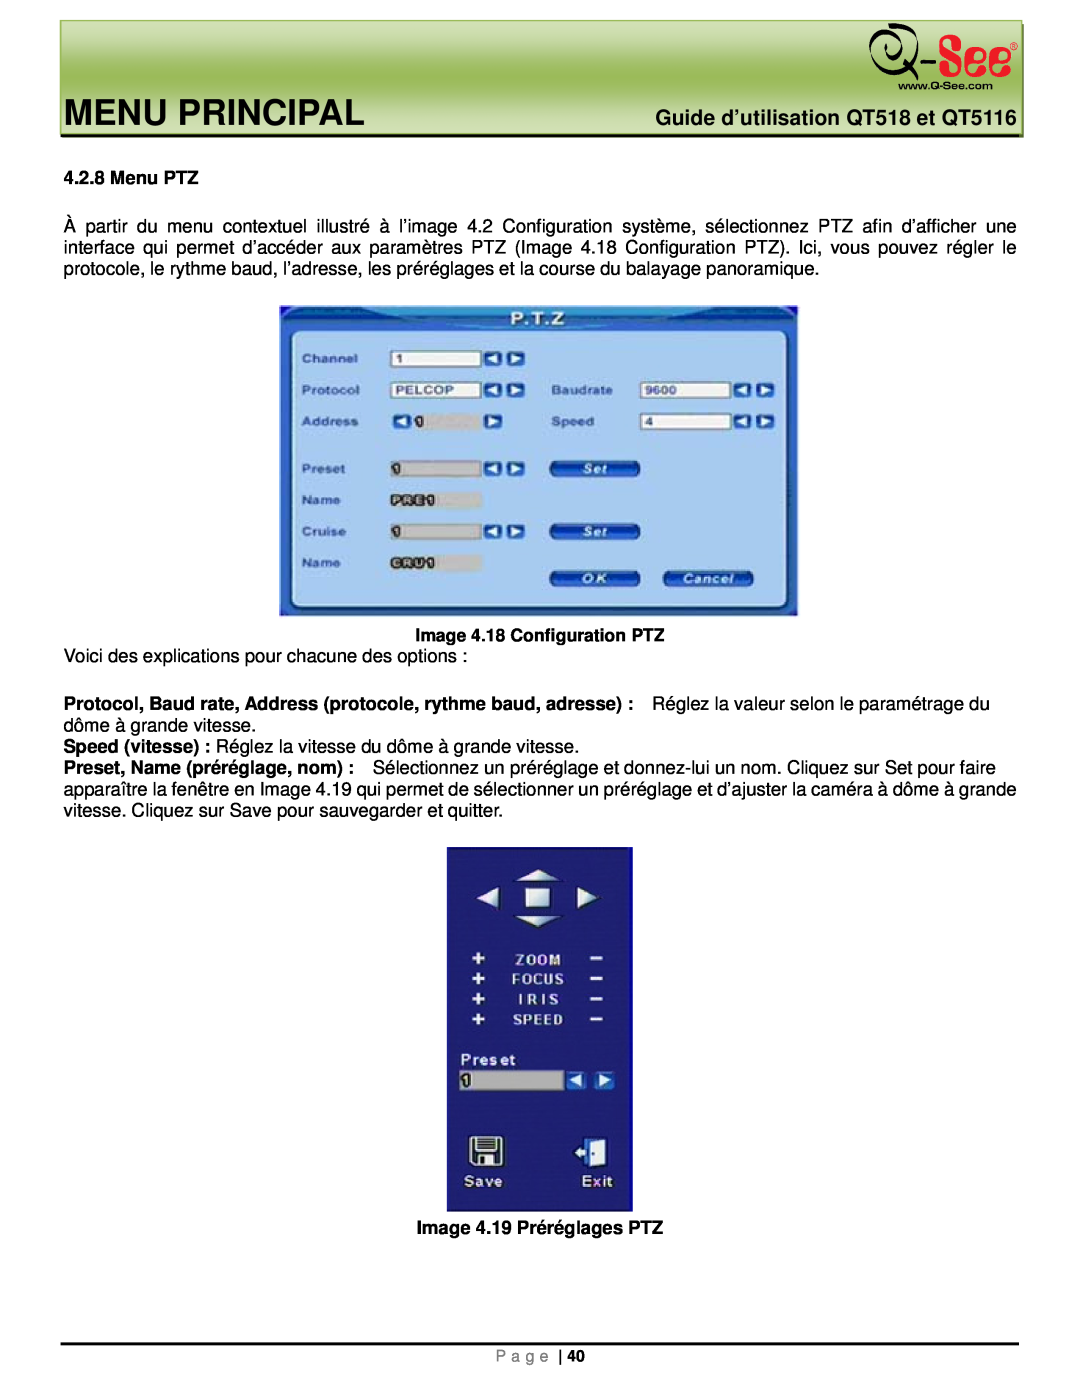 Q-See manual Menu Principal, Guide d’utilisation QT518 et QT5116, Menu PTZ, Image 4.19 Préréglages PTZ 